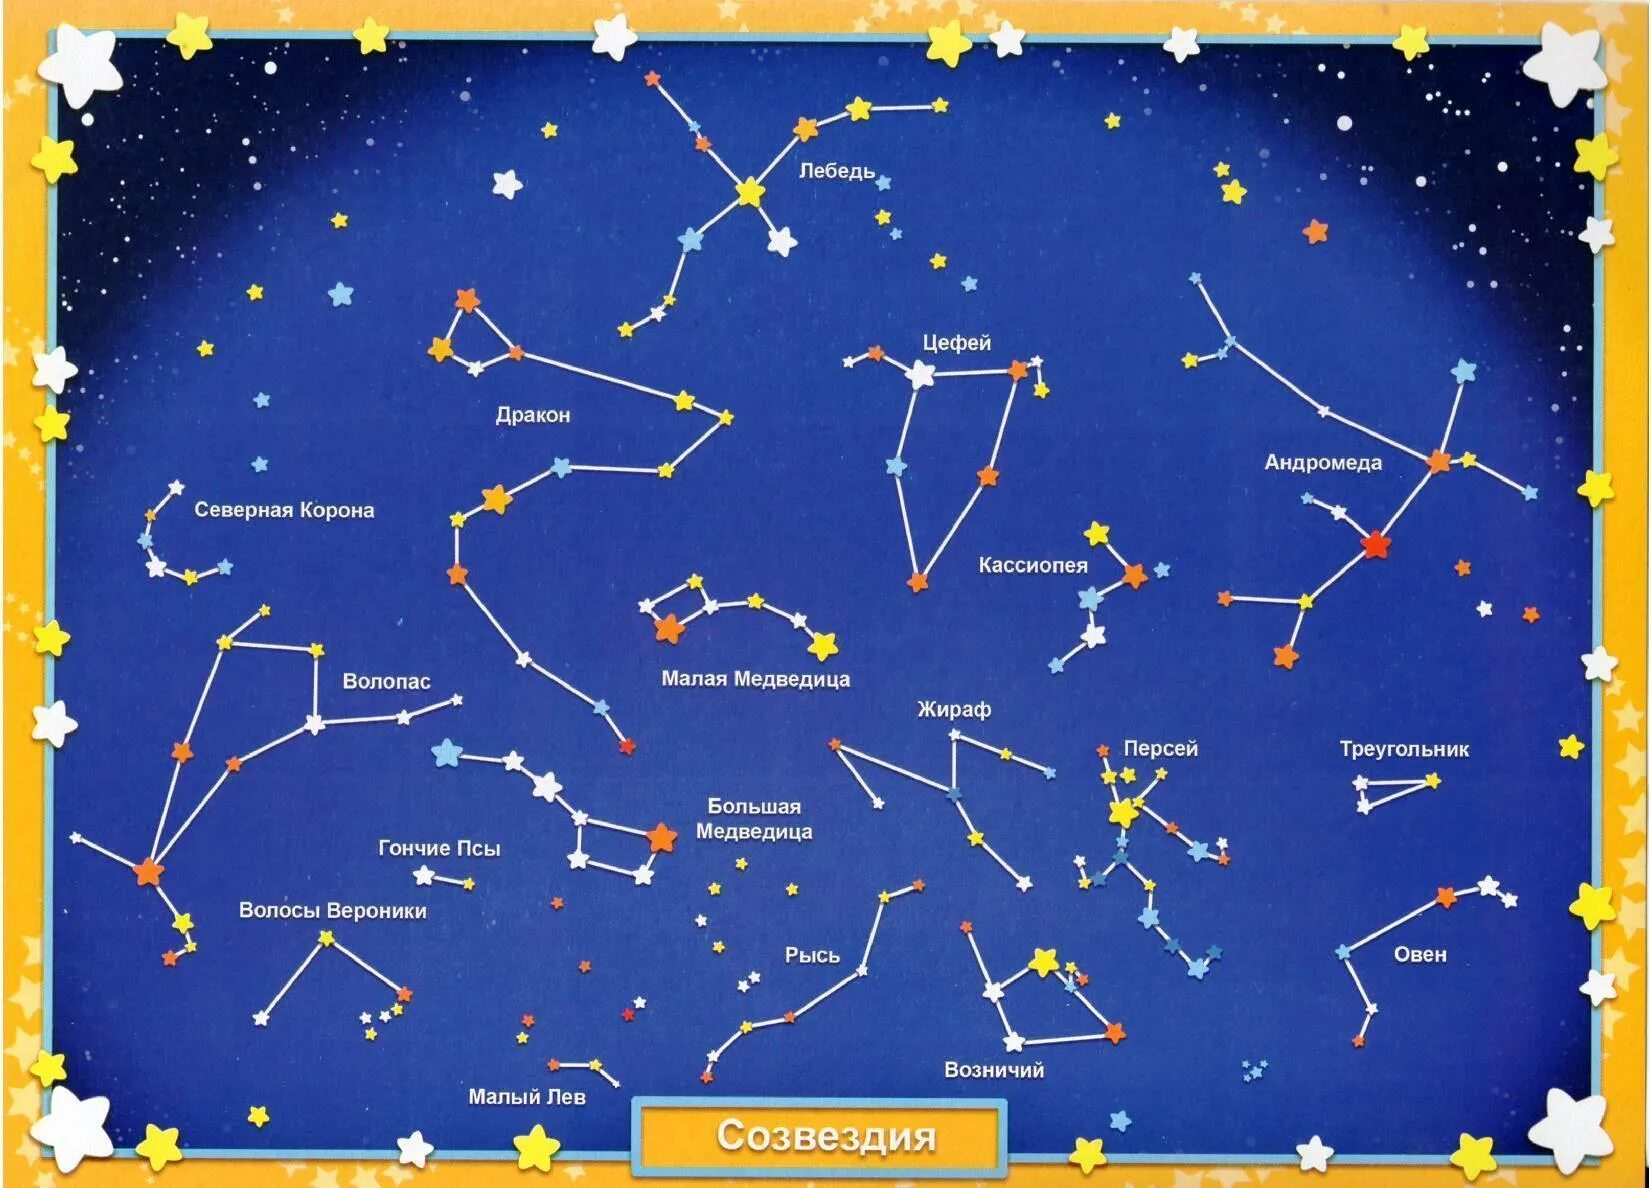 Созвездие объяснение. Схематическое изображение созвездий для детей и их названия. Звездное небо созвездия для детей. Карта звездного неба с названиями созвездий. Звездноемнебл созвездия.